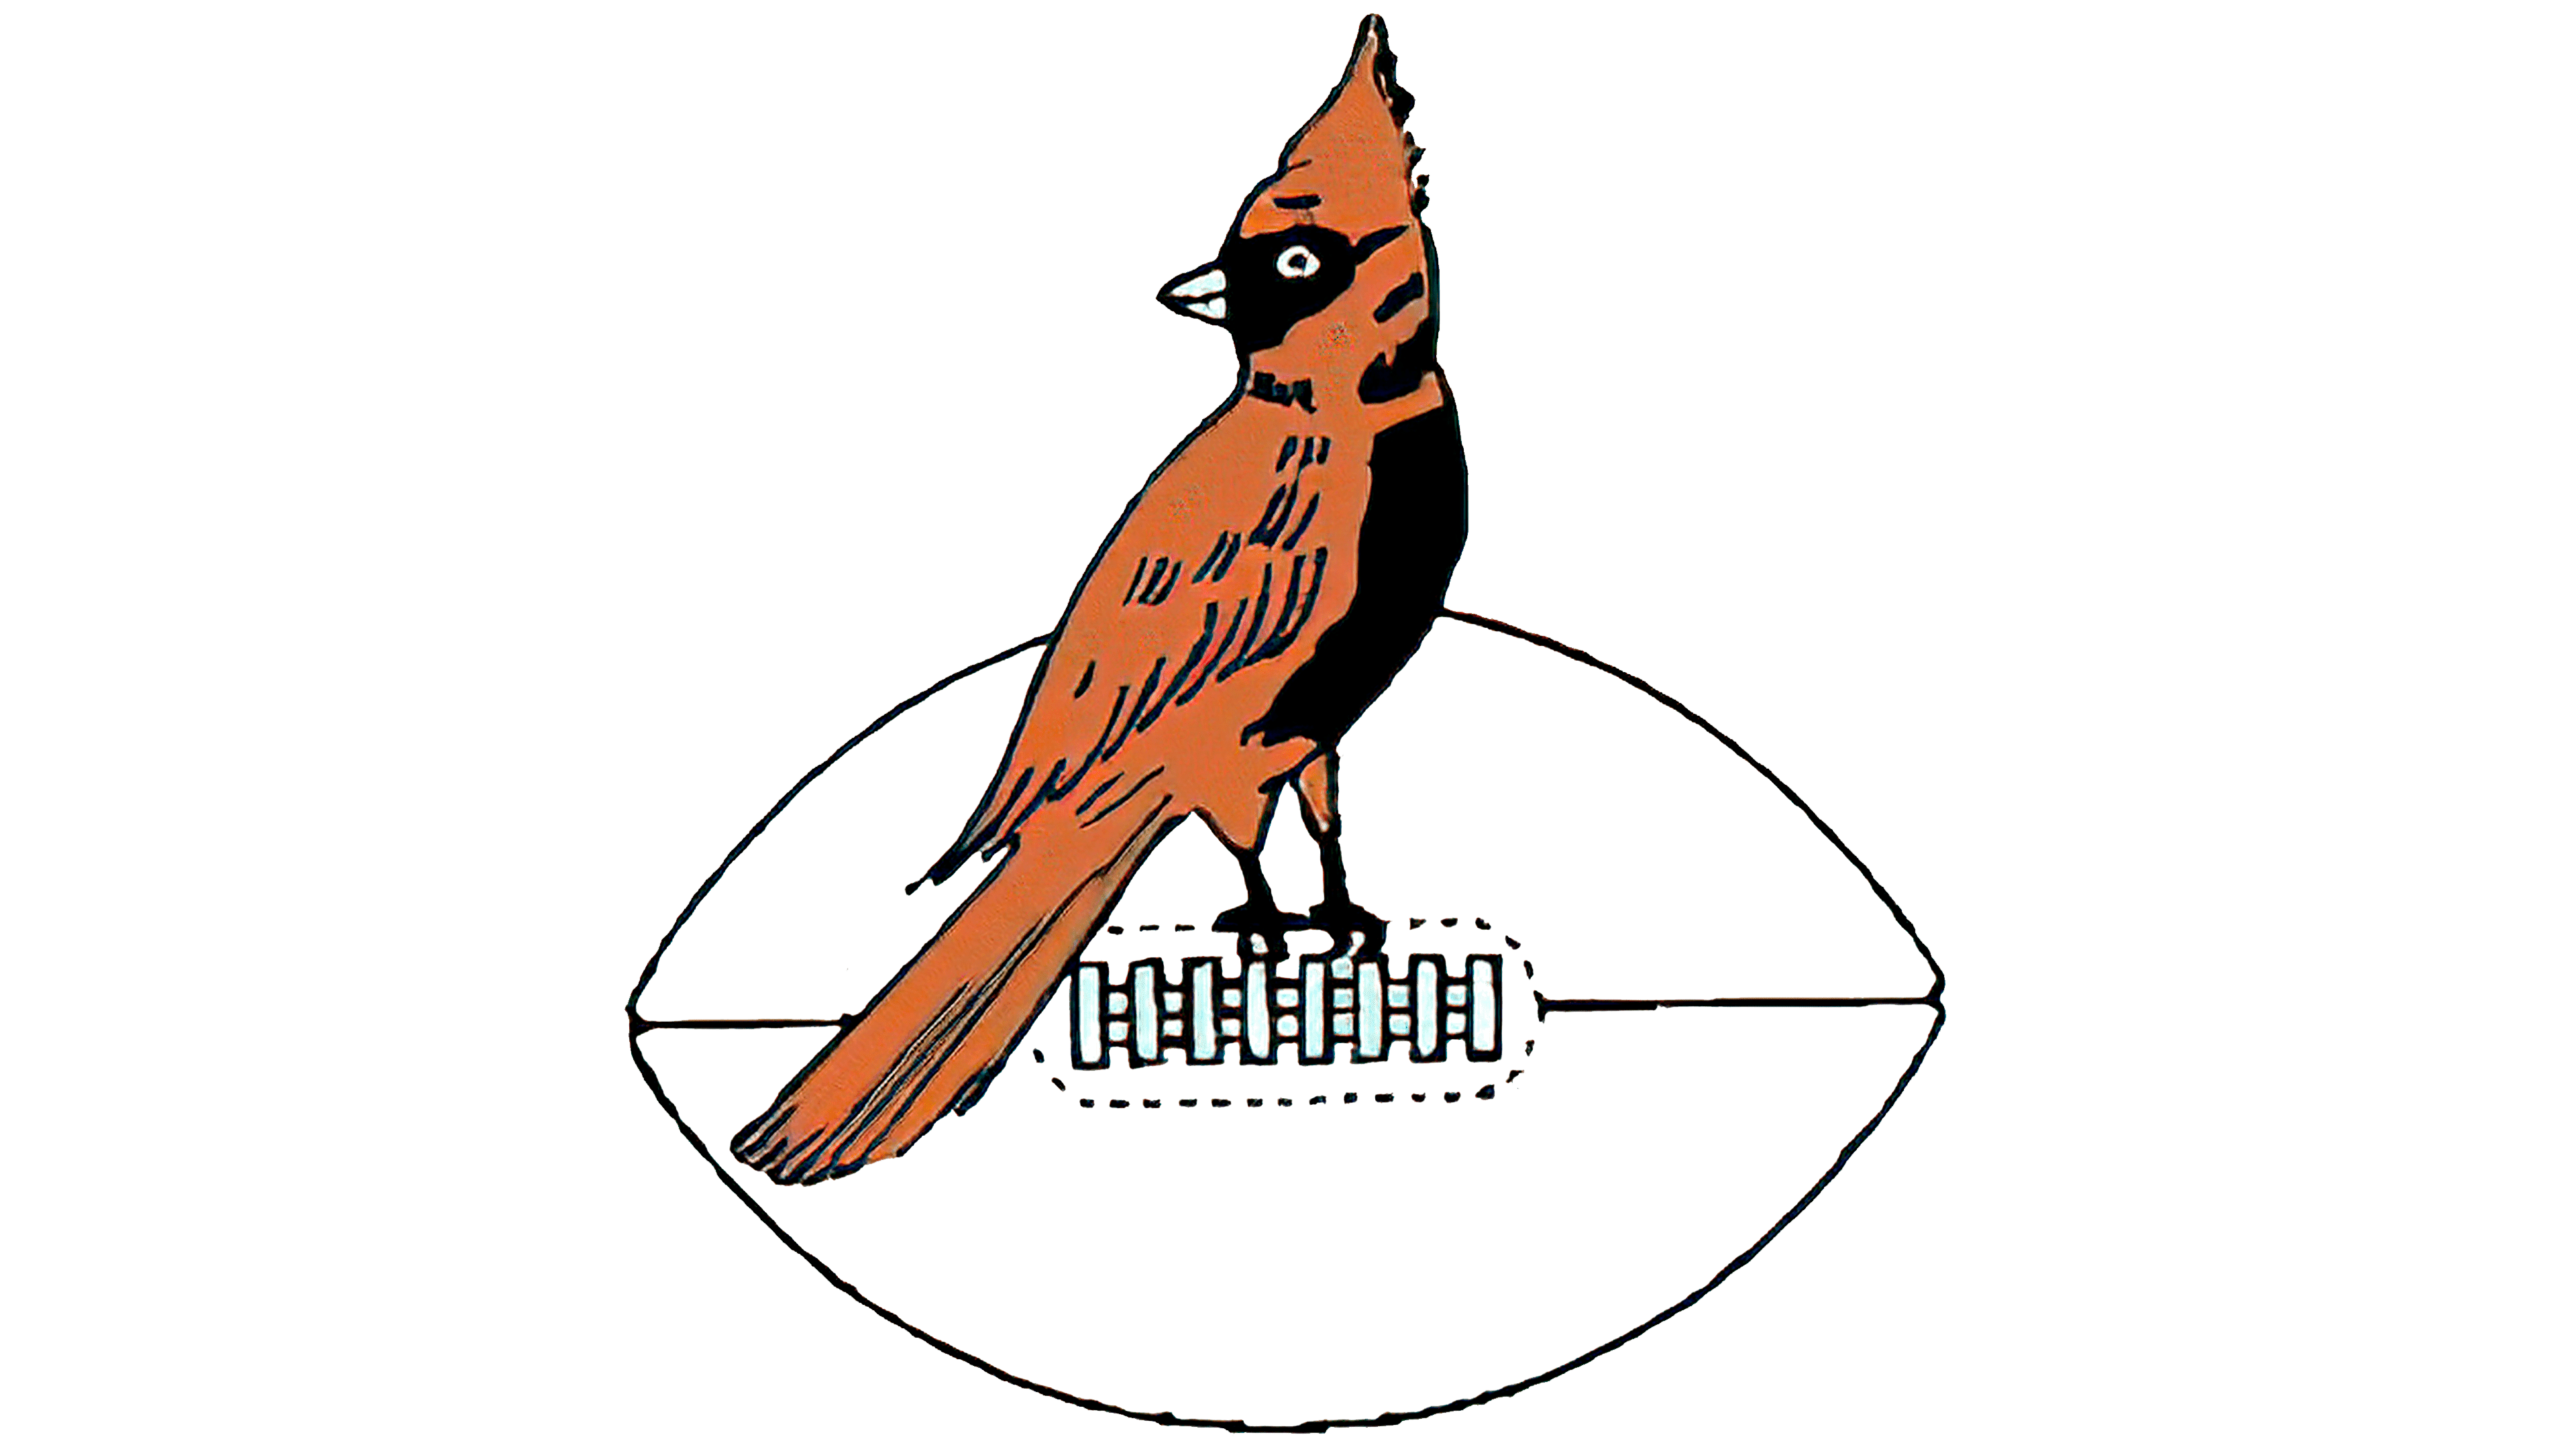 retro cardinals logo